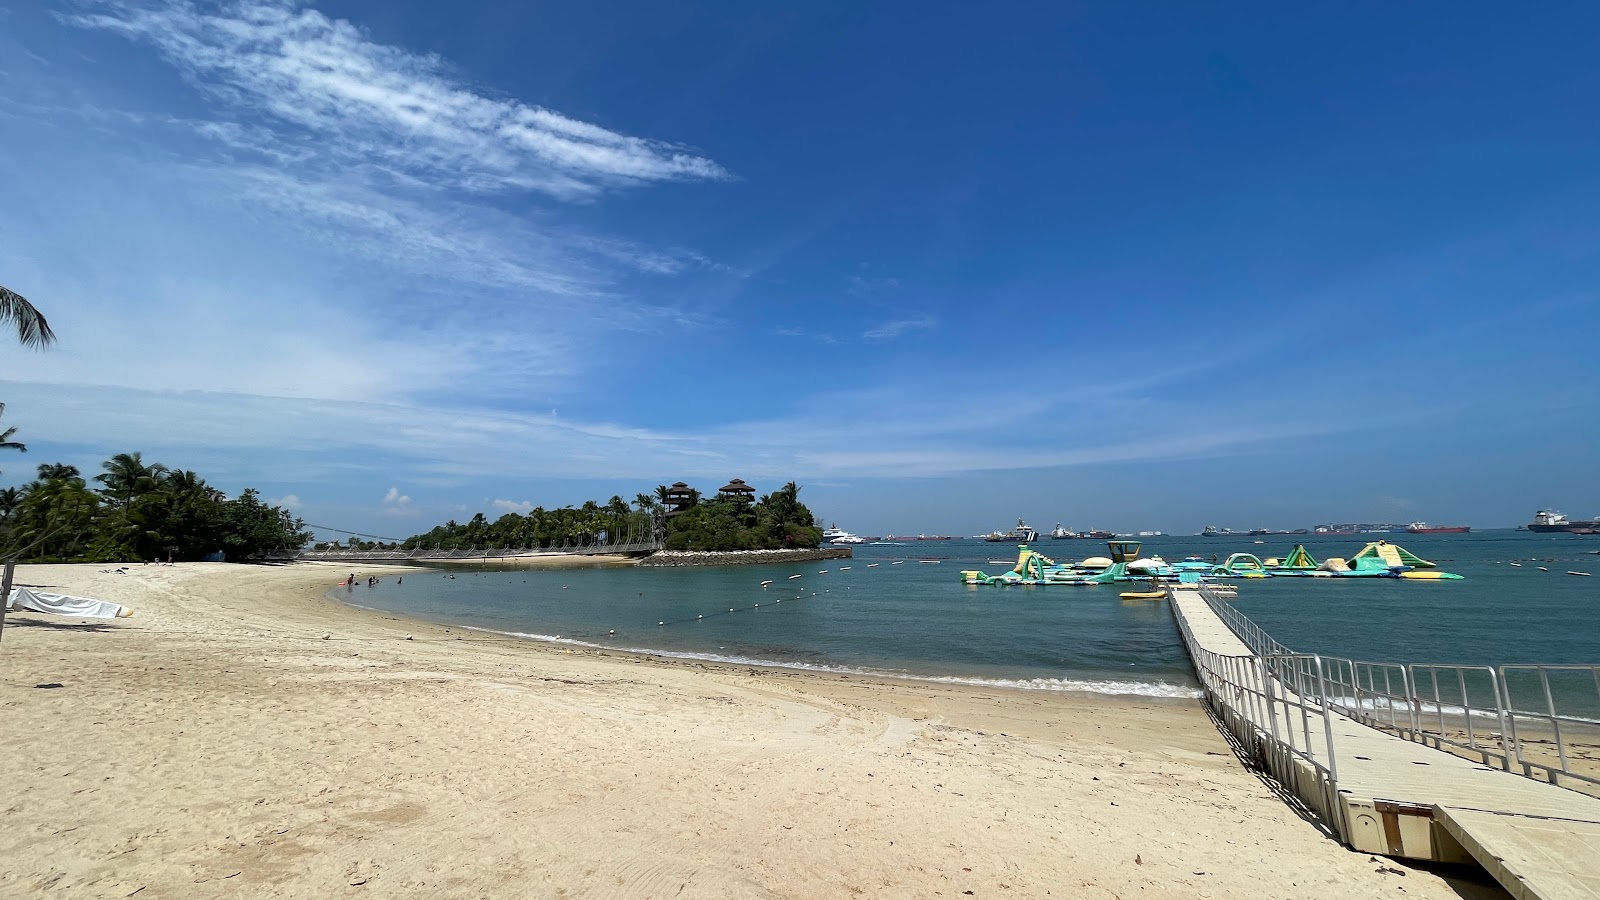 Palawan Beach'in fotoğrafı geniş plaj ile birlikte